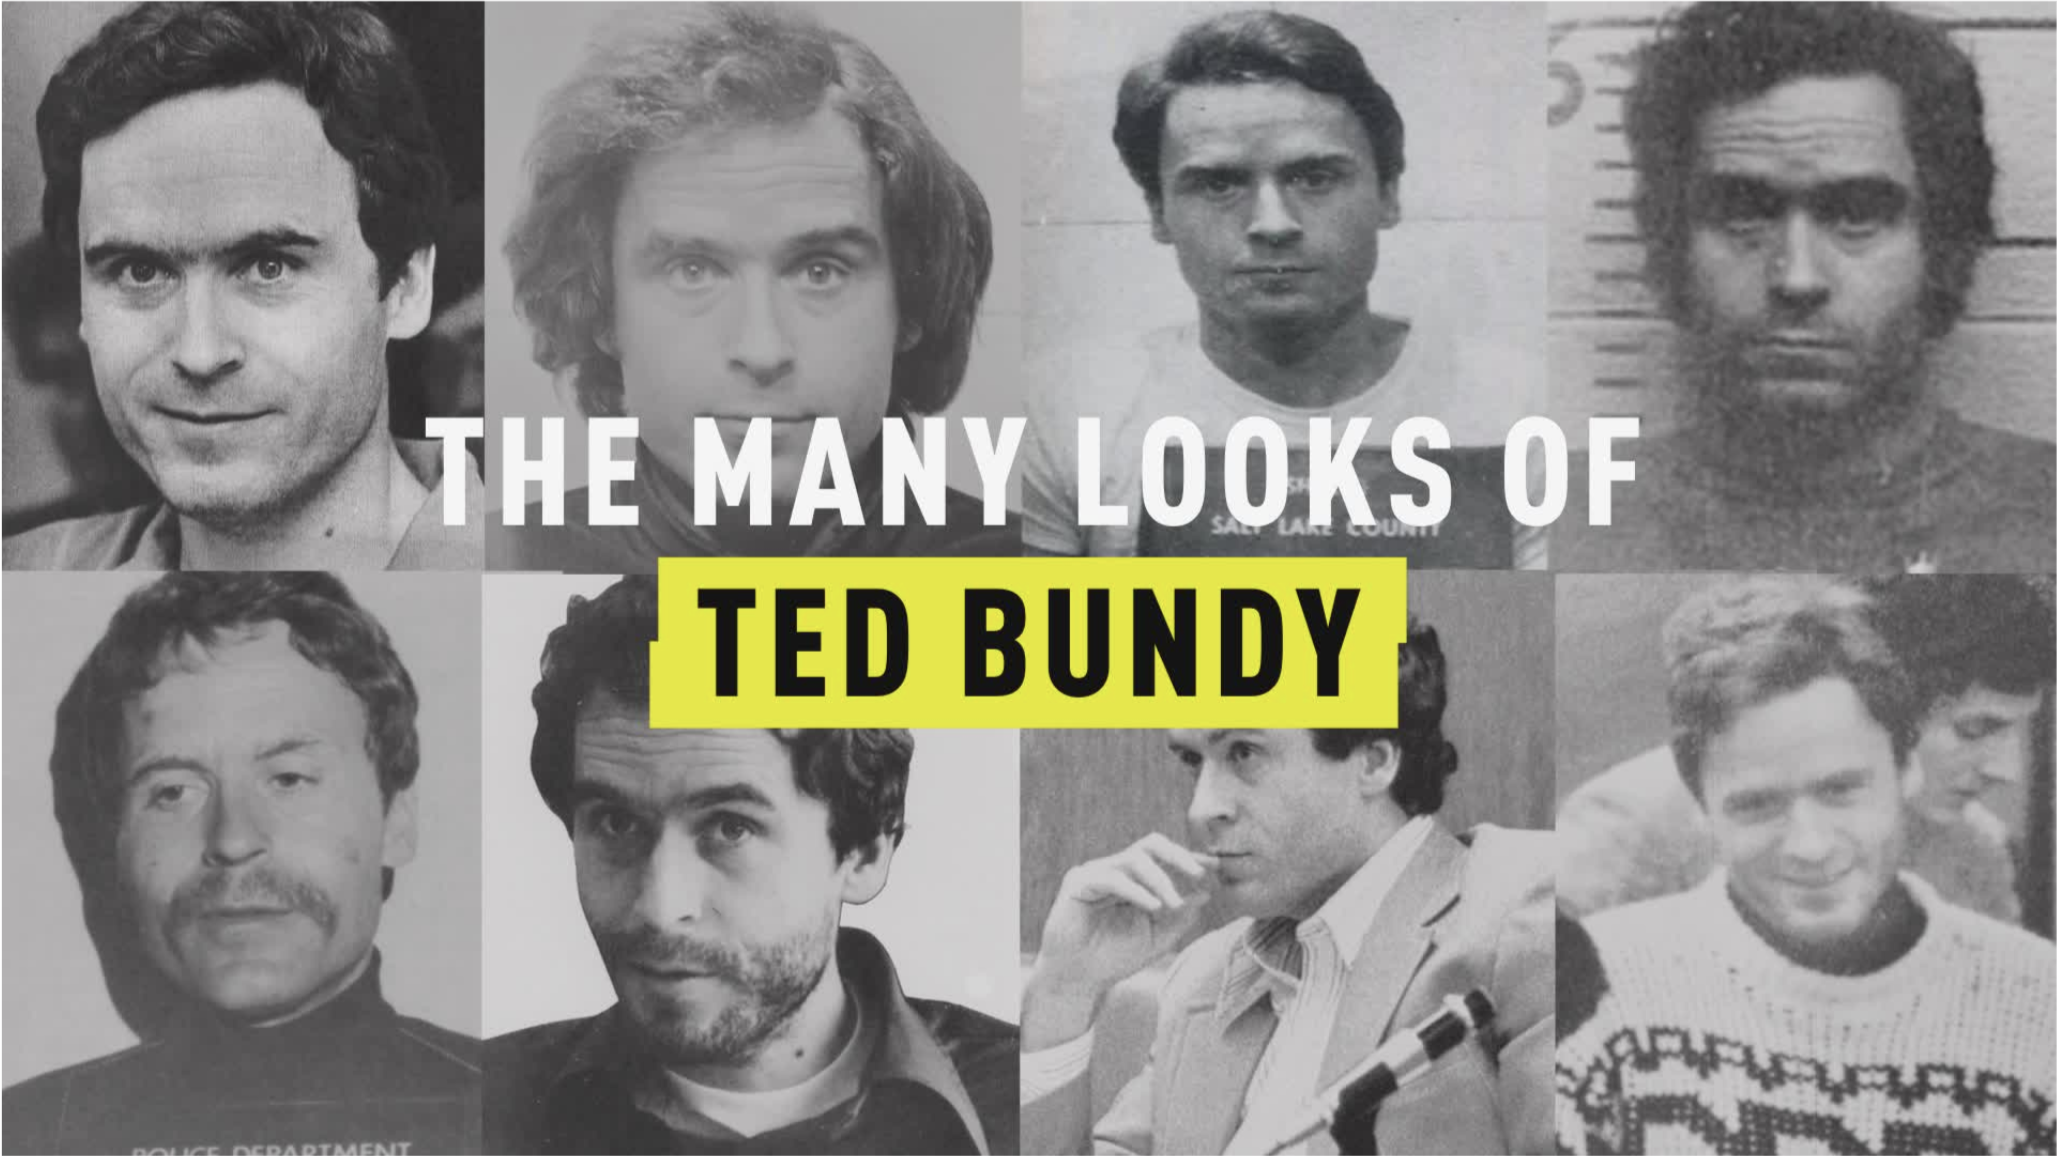 Тед банди серийные убийцы 1970 х годов